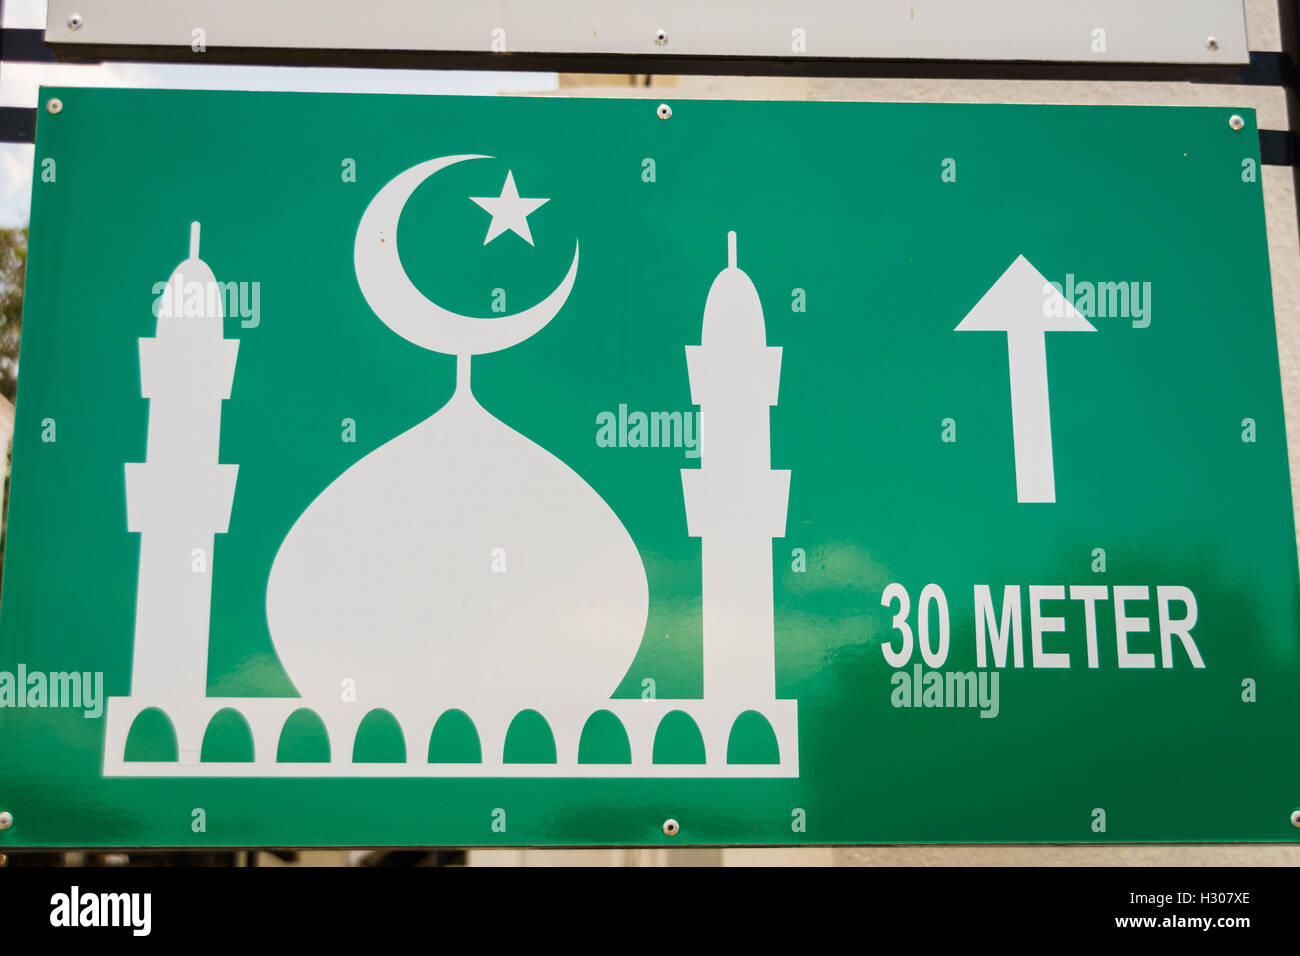 Moschee-Kuppel-Symbol - Straße Richtungsanzeiger für Moschee Stockfoto